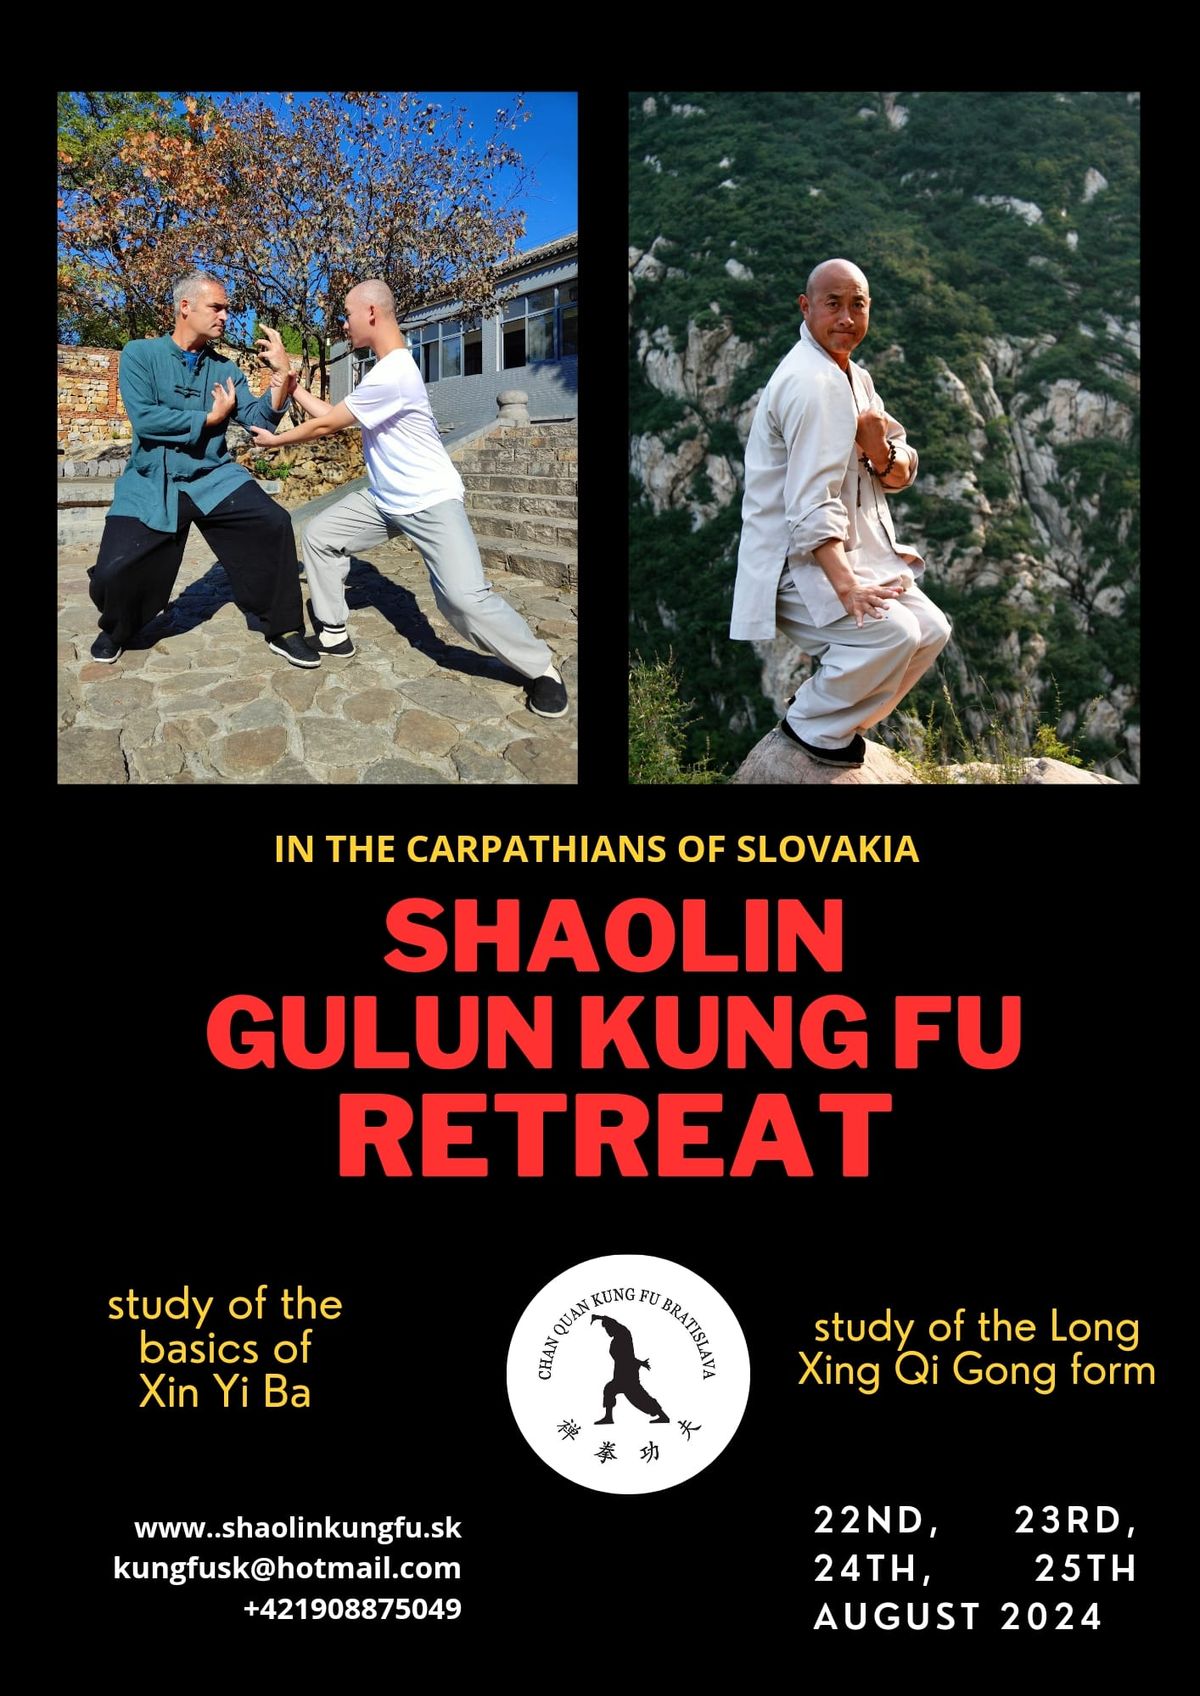 Shaoli Gulun Kung Fu retreat 